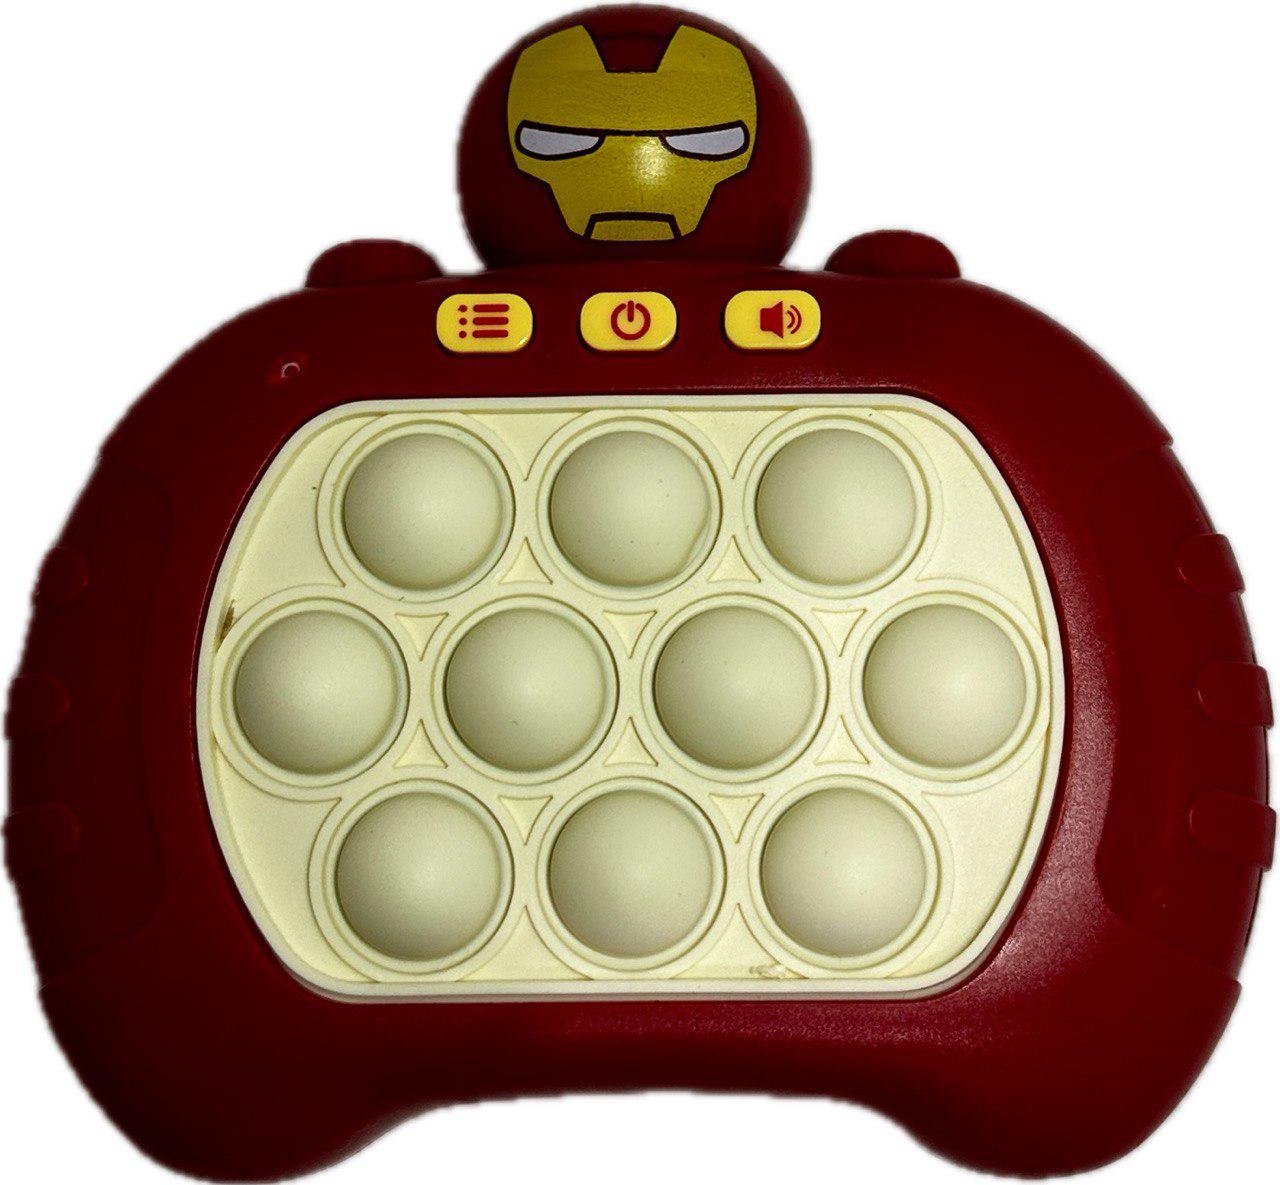 Іграшка електронна 696 Toys Quick Push Pop It 4 режими гри Червоний (QPPI7)